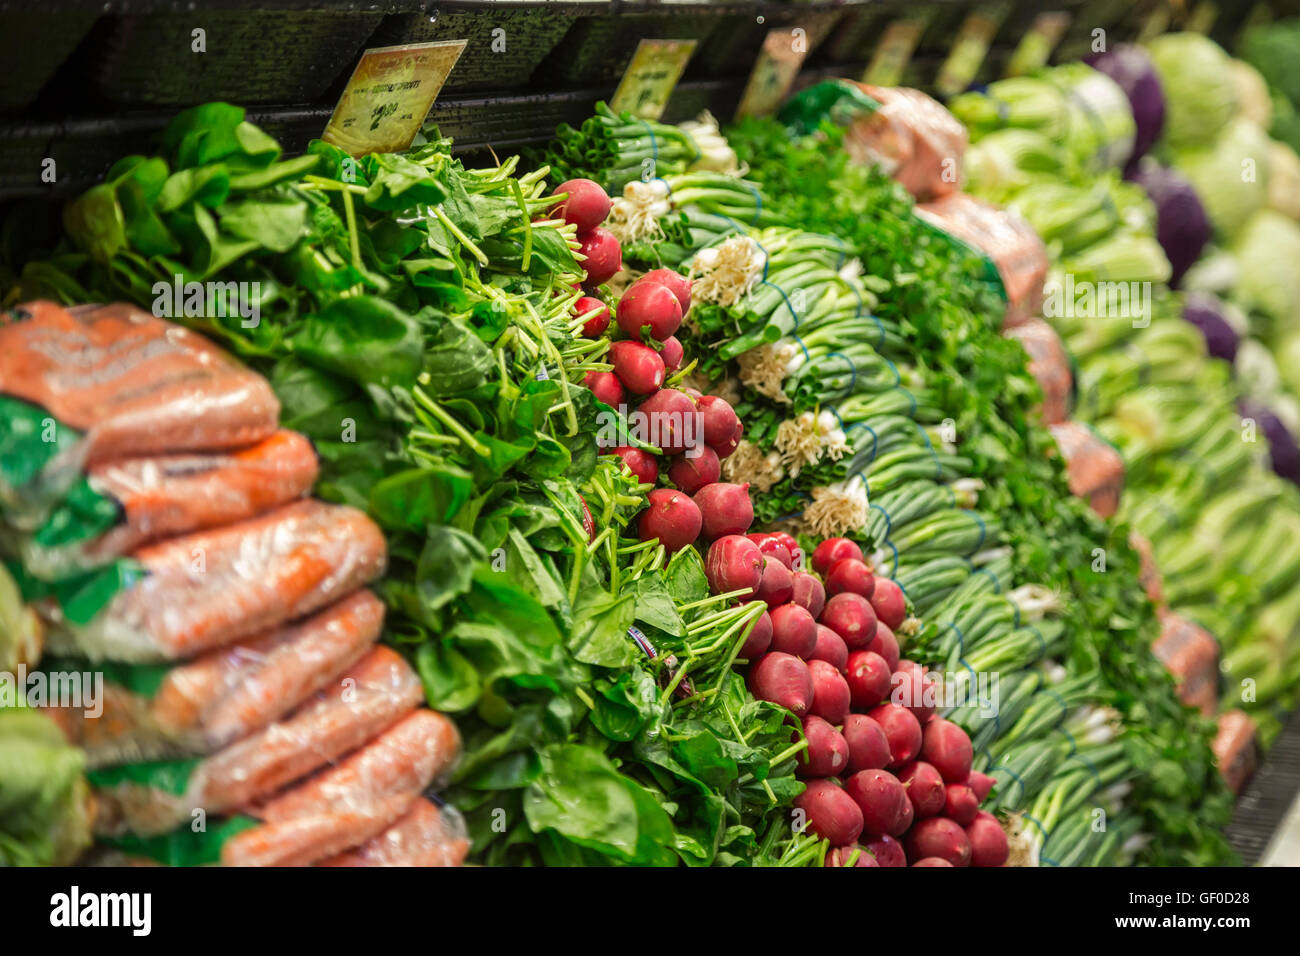 Las Vegas, Nevada - i germogli Farmers Market. La società gestisce 230 negozi in 13 Stati membri, concentrandosi sulle carni e cibi sani. Foto Stock